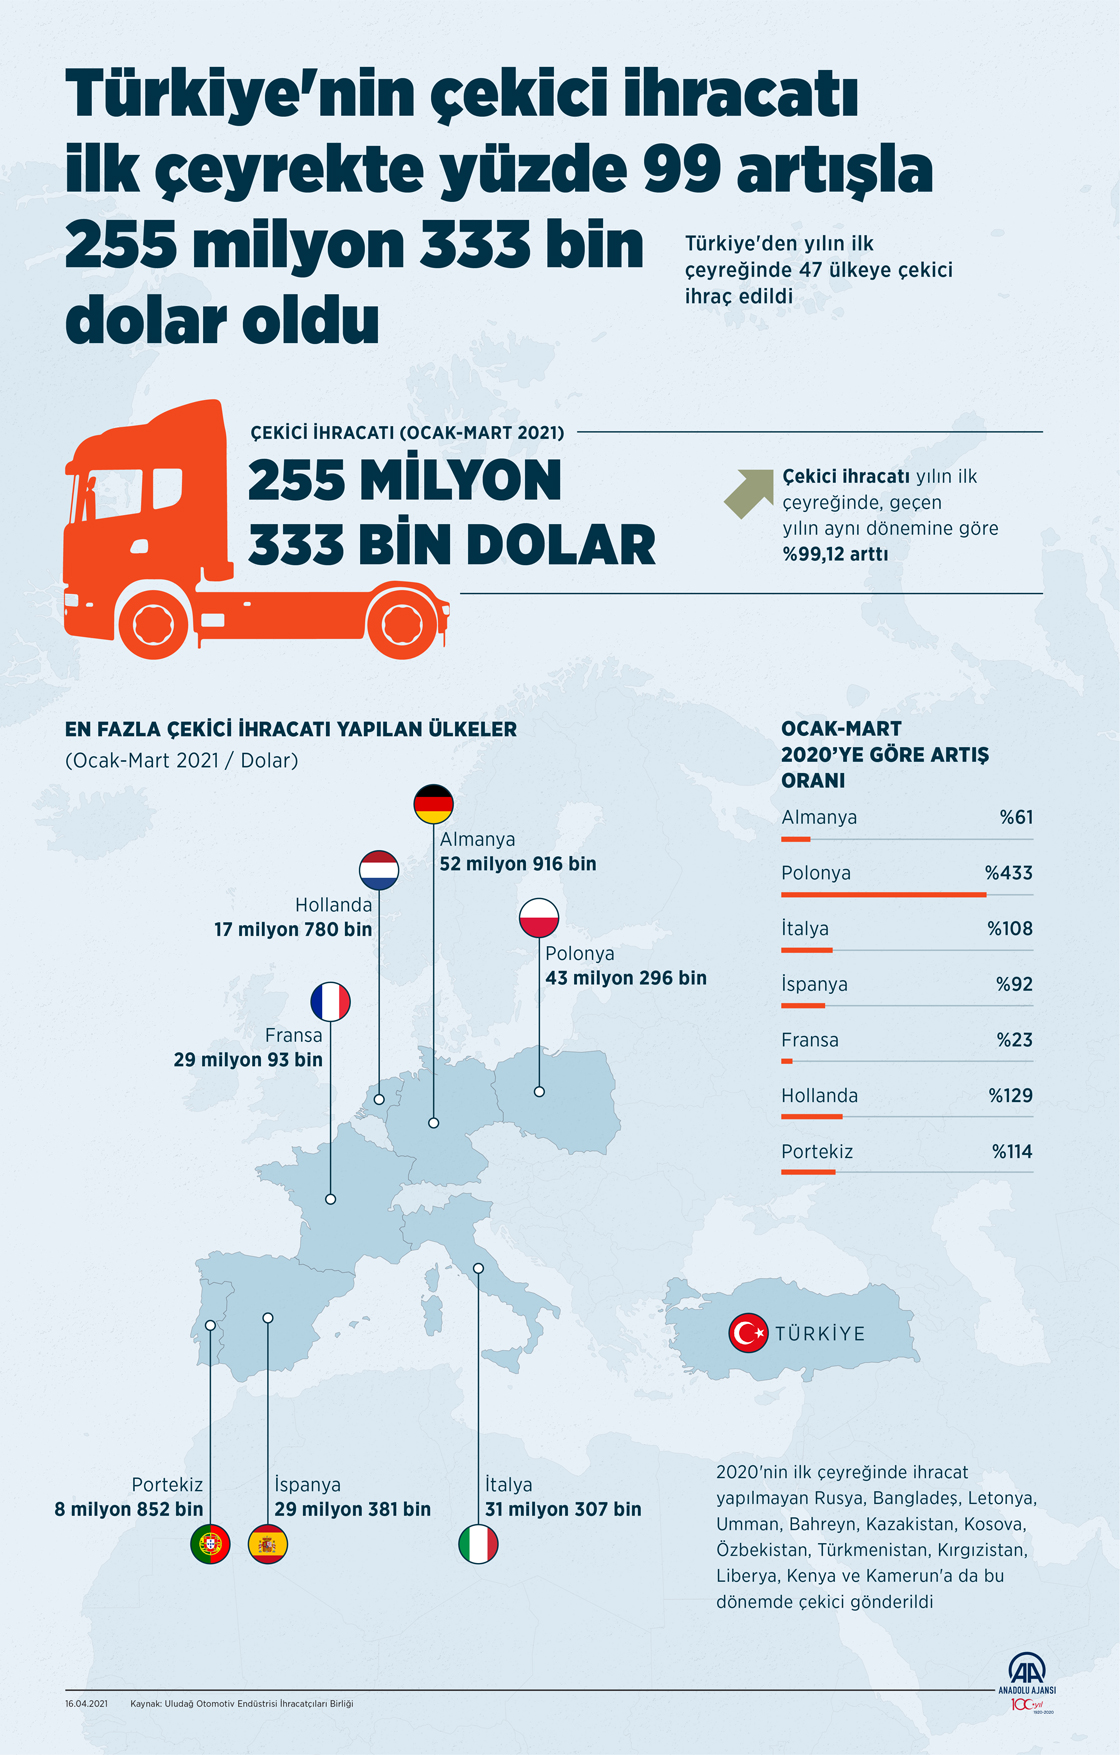 Türkiye'nin çekici ihracatı ilk çeyrekte yüzde 99 artışla 255 milyon 333 bin dolar oldu